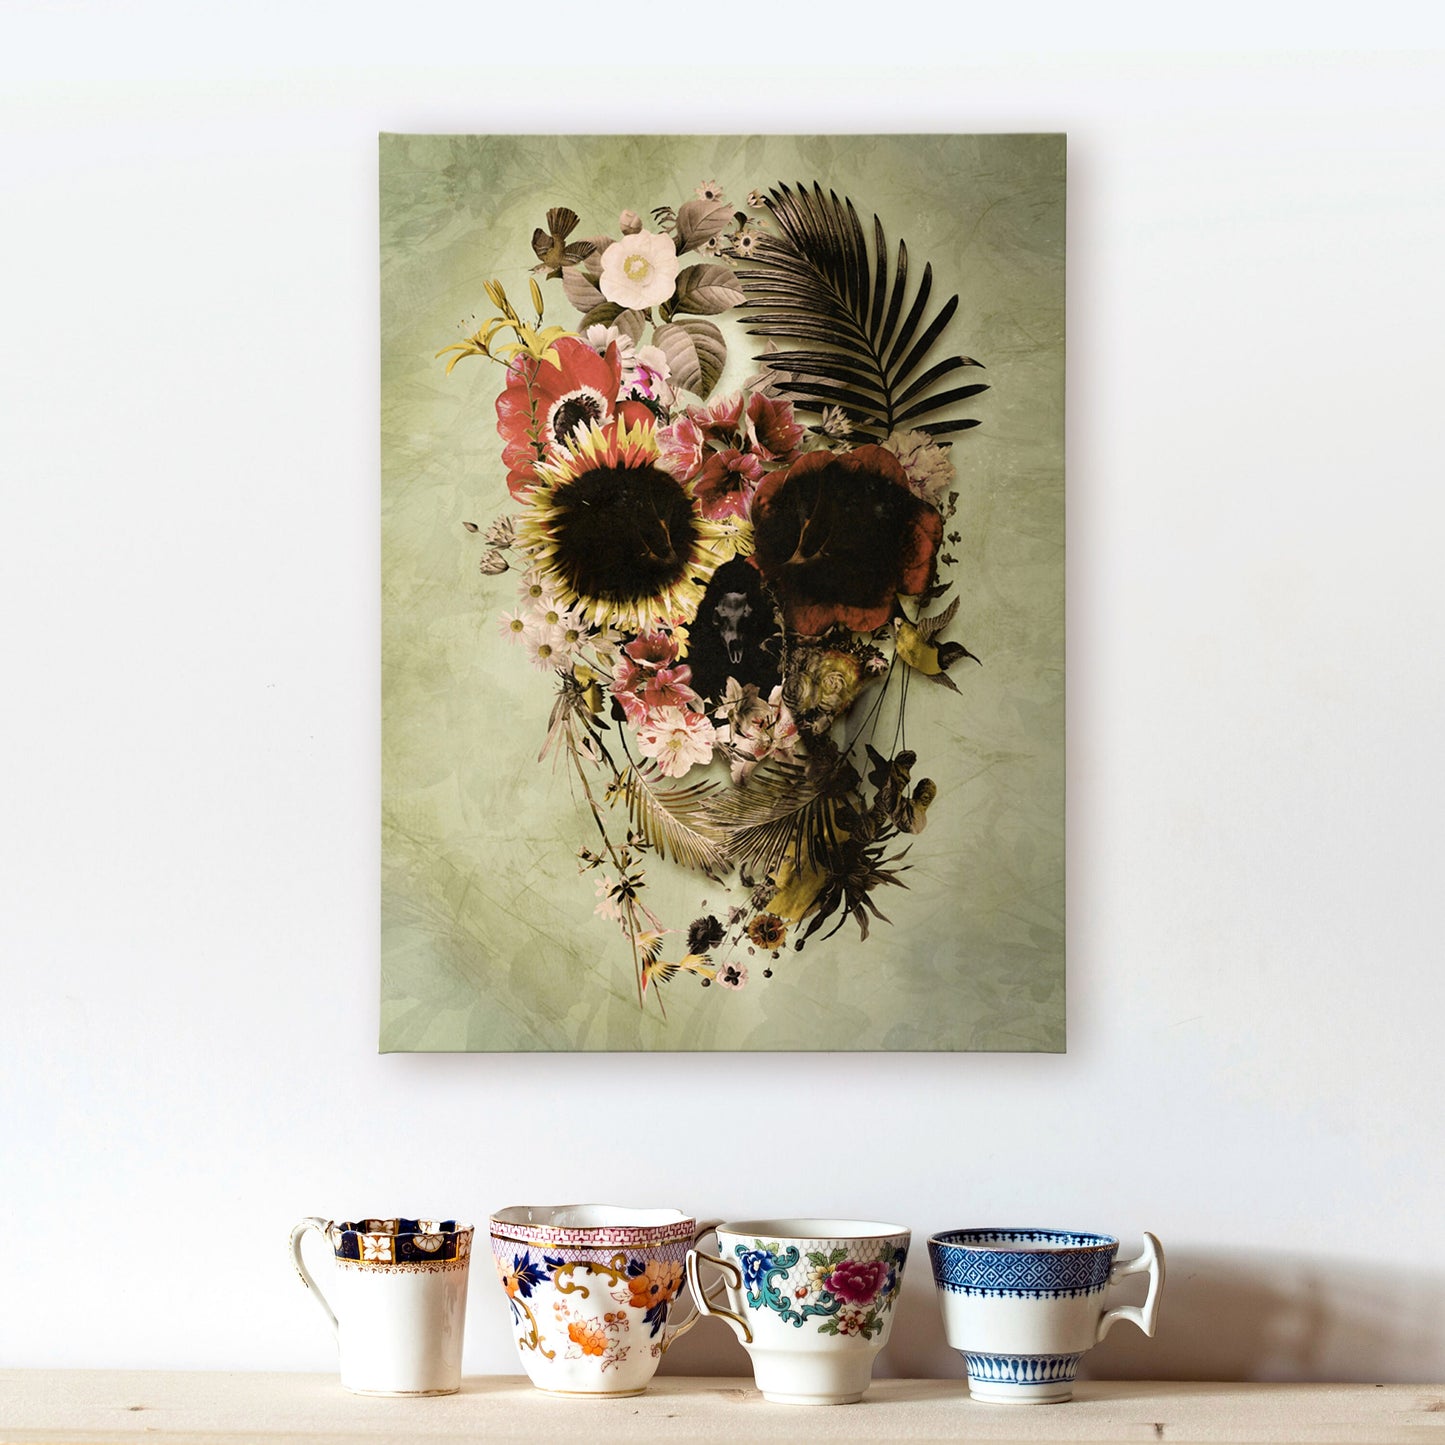 Garden Skull Canvas Print, Boho Floral Skull Wall Art, Sugar Skull Canvas Art Home Decor, Gothic Skull Art Print, Flower Skull Illustration